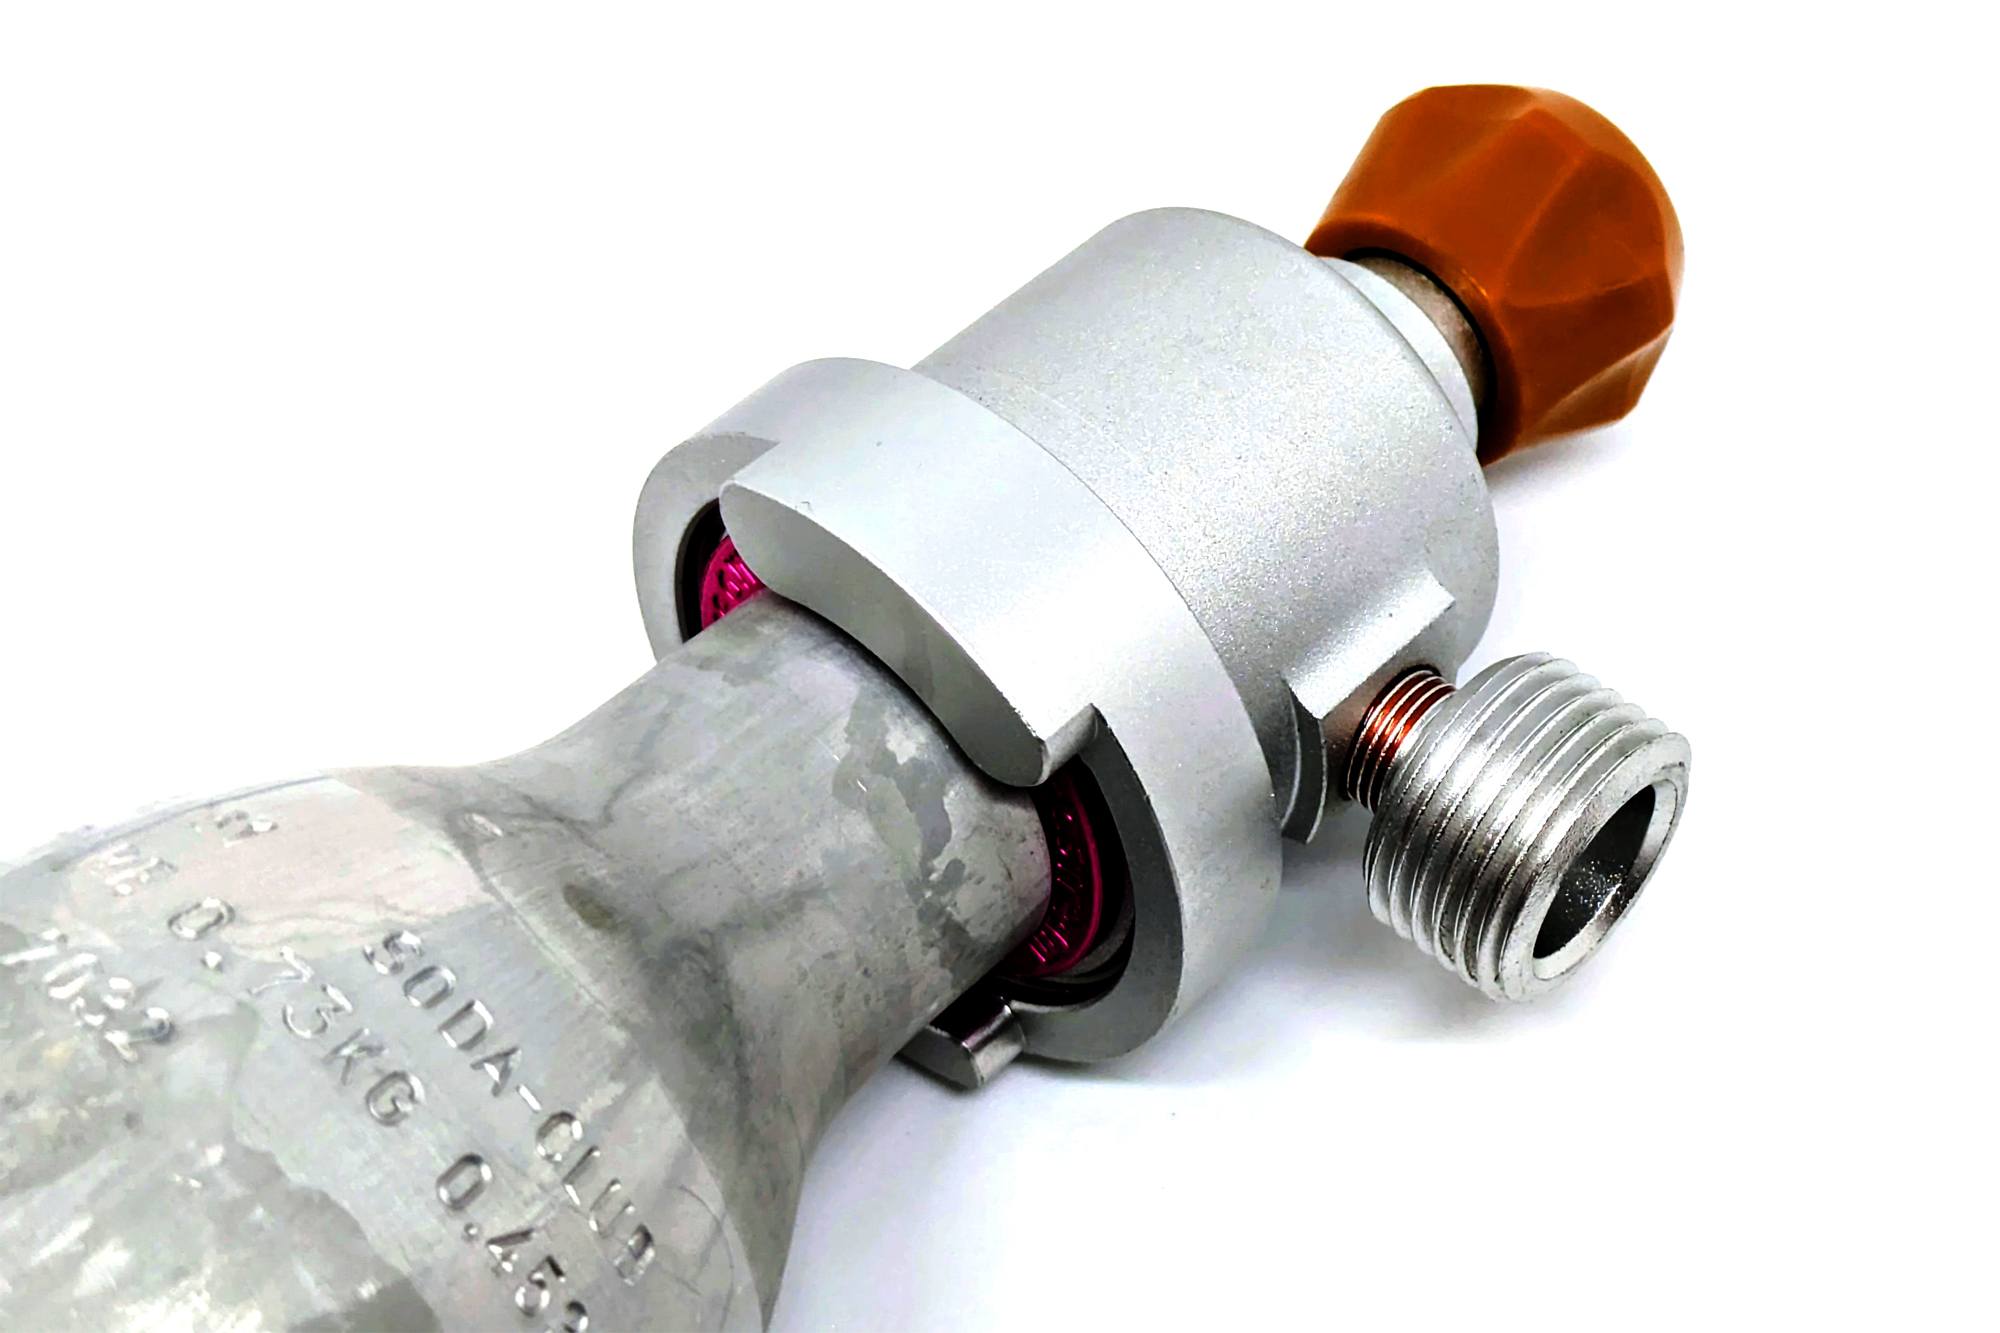 SodaStream Quick-Connect avansert adapter med sylinder